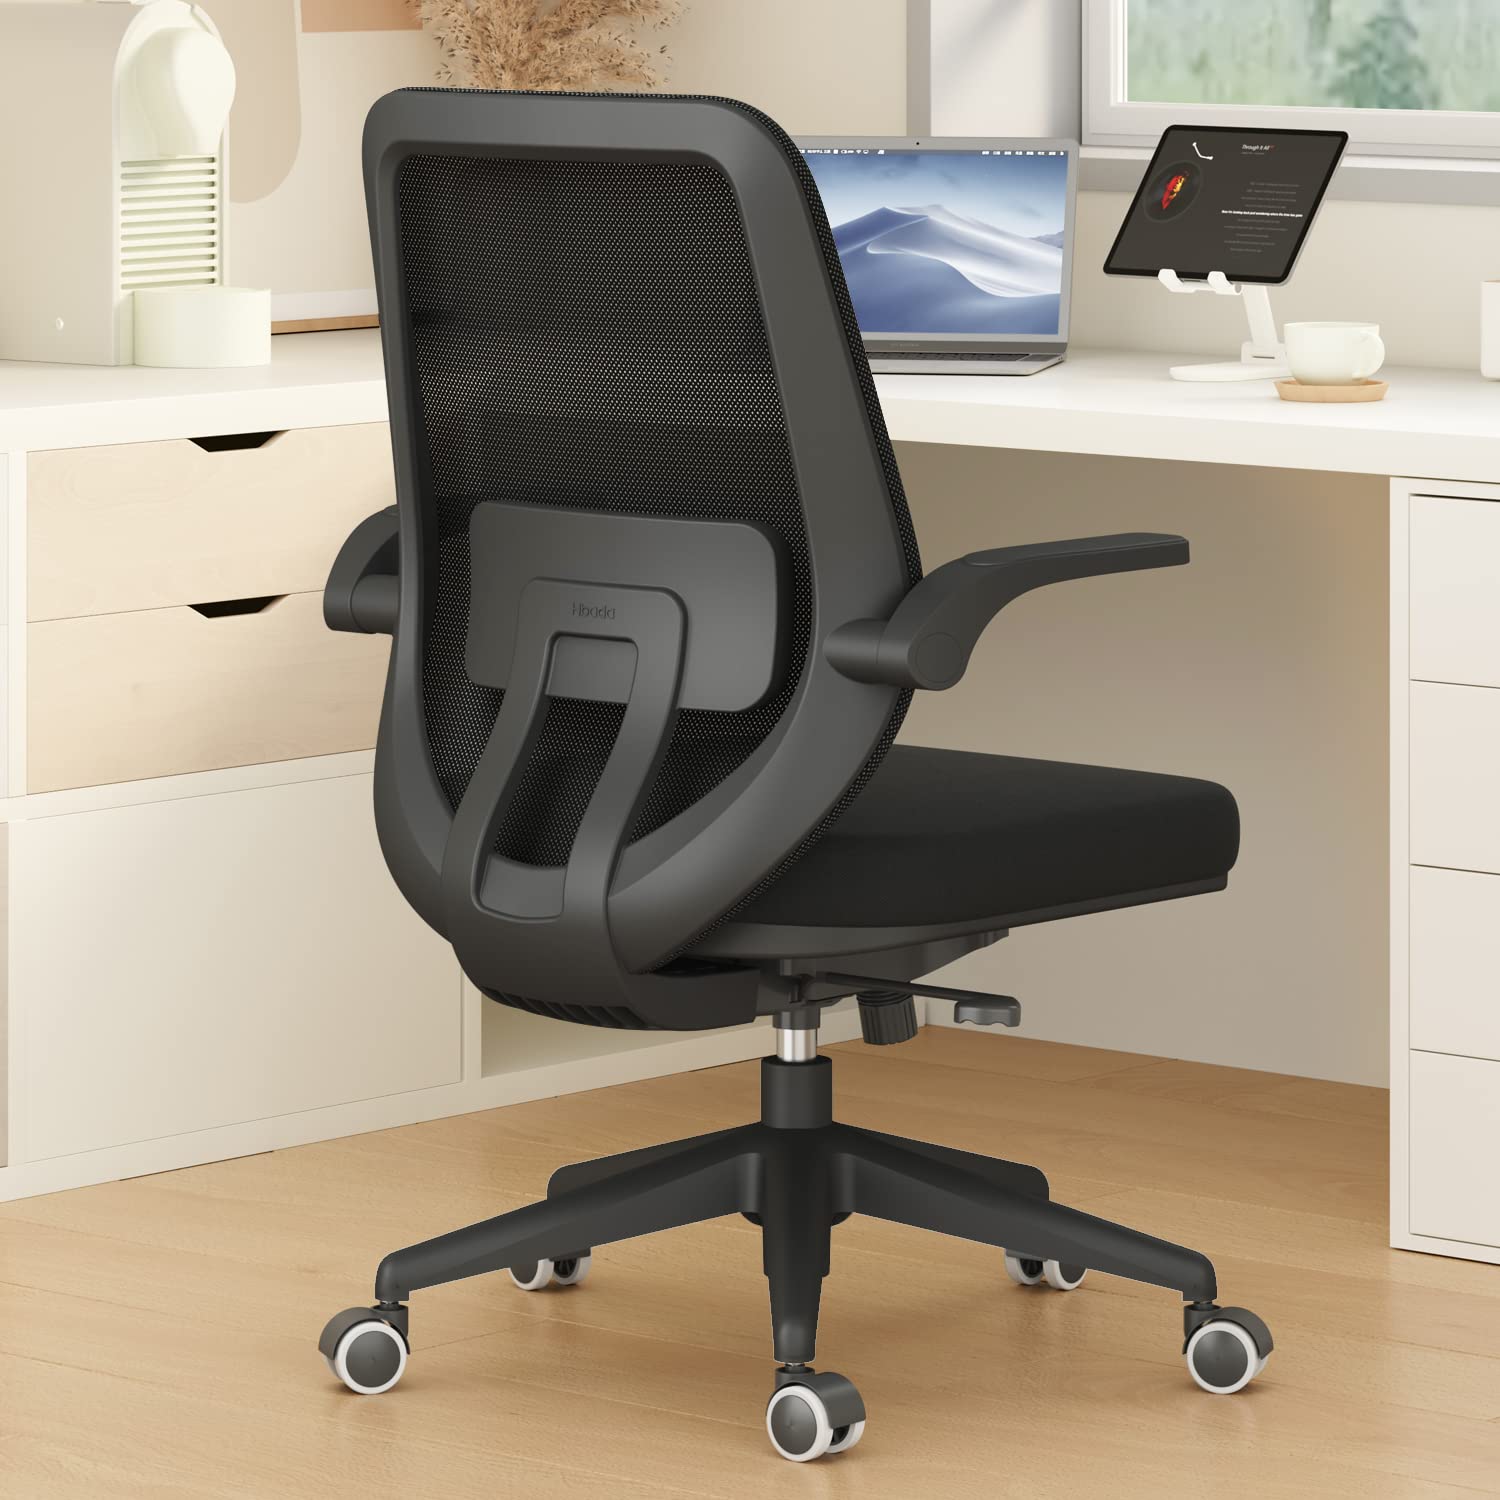 Hbada Silla de oficina Silla de escritorio giratoria Sillas cómodas para el hogar con brazos abatibles y altura ajustable